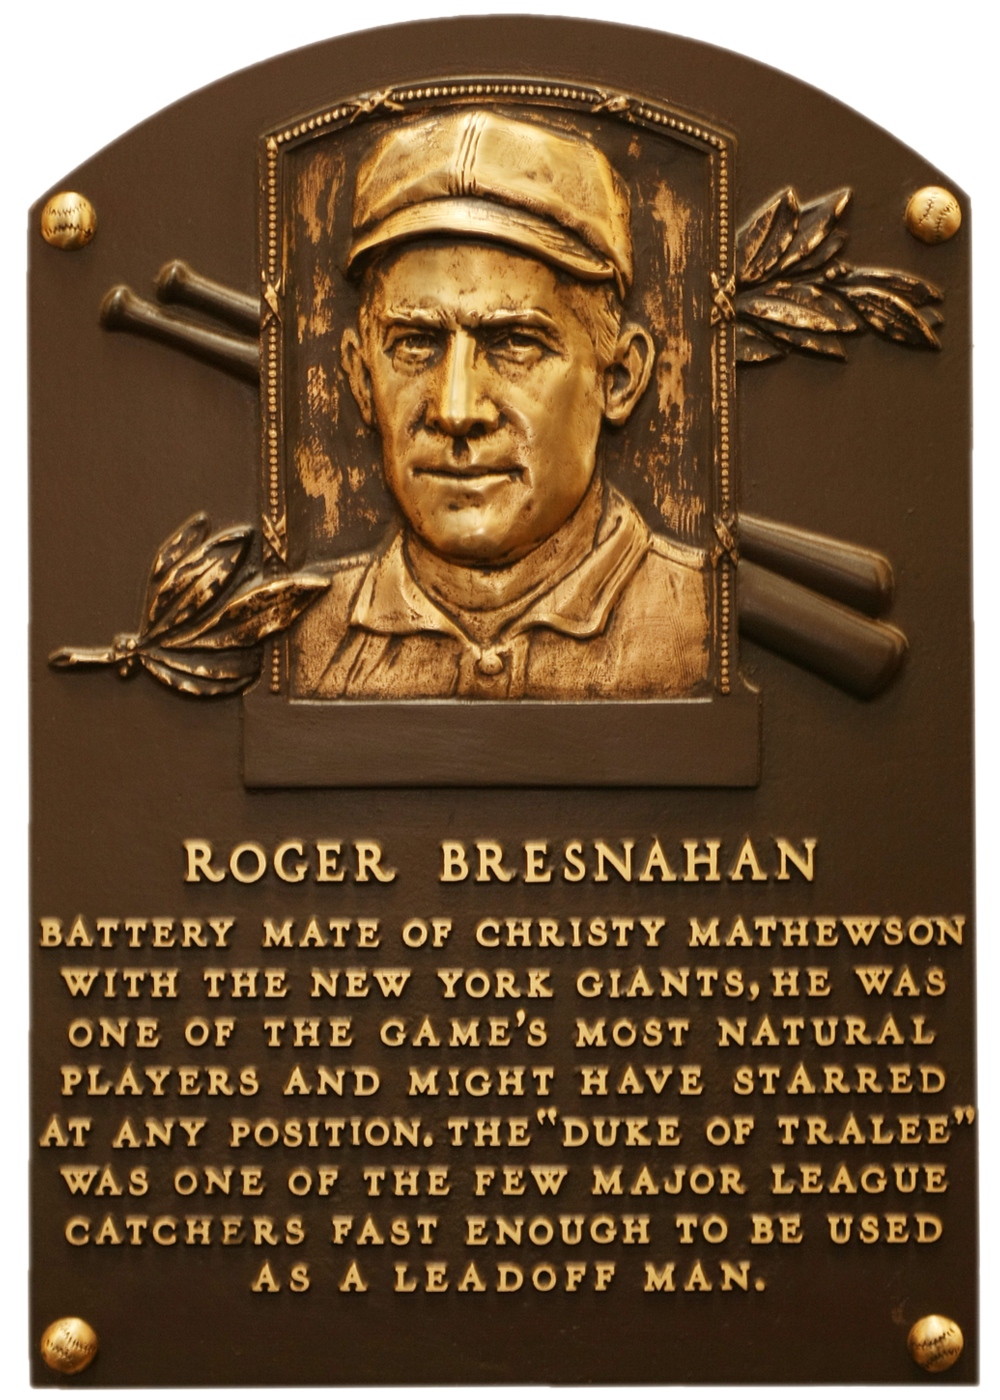 Roger Bresnahan Hall of Fame plaque